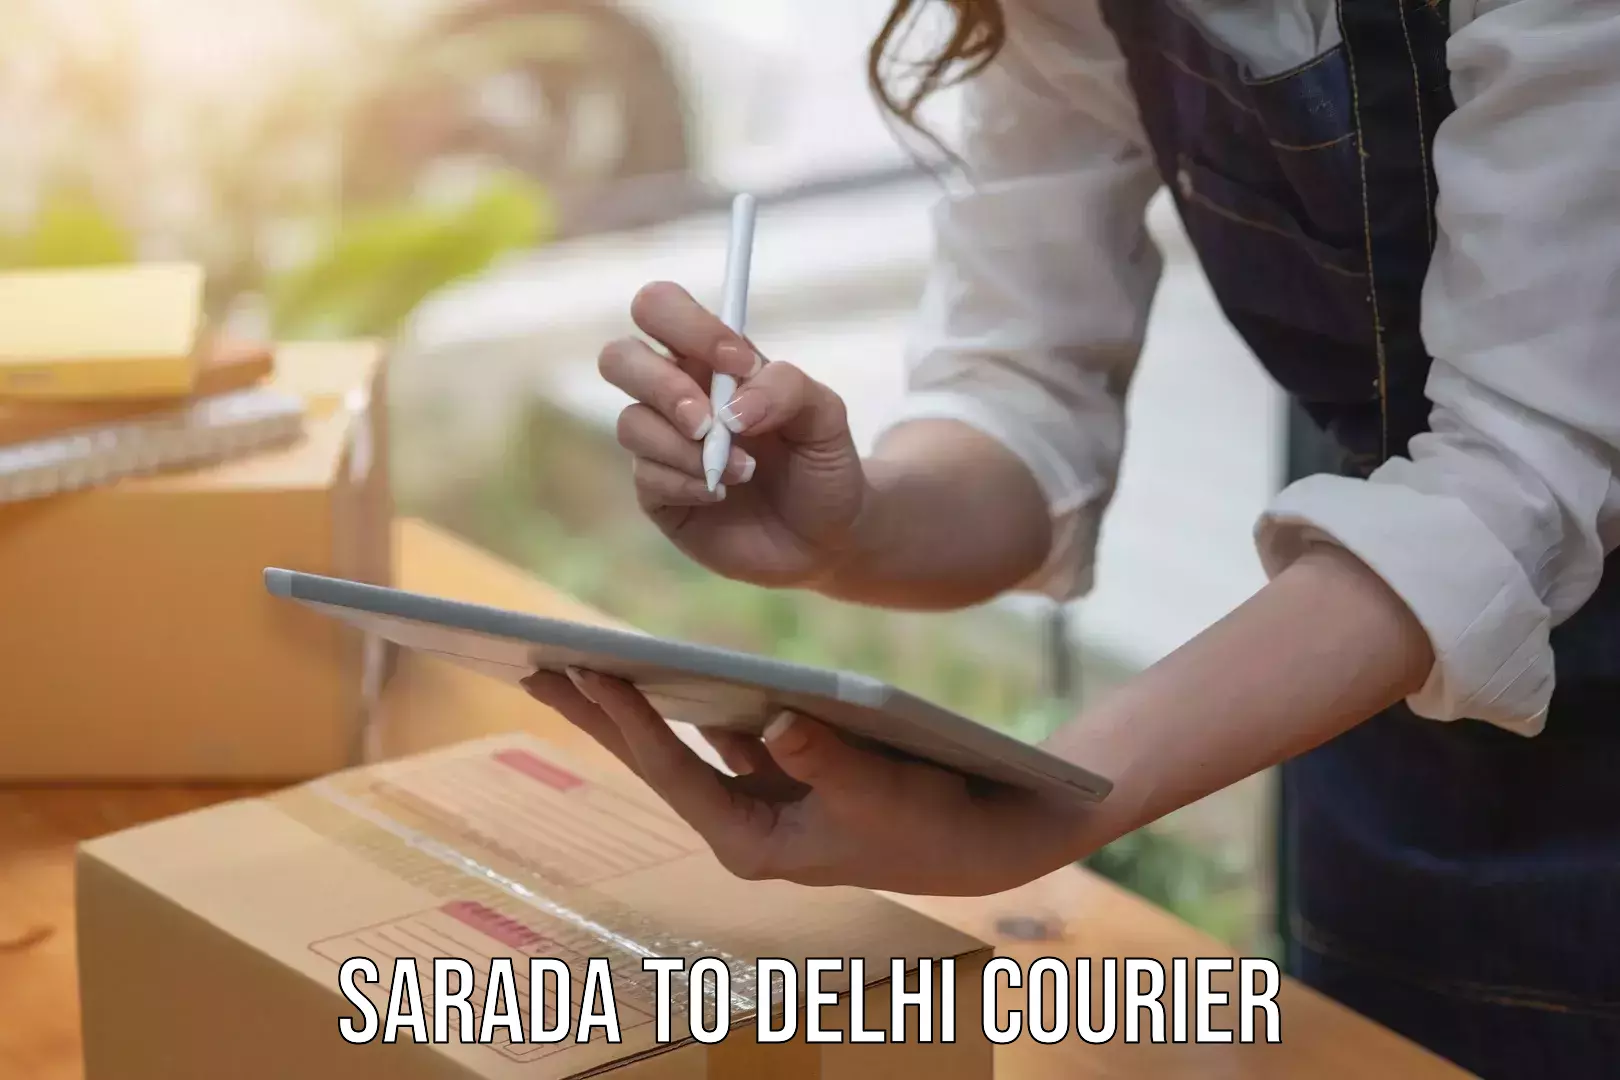 Courier service efficiency Sarada to NIT Delhi